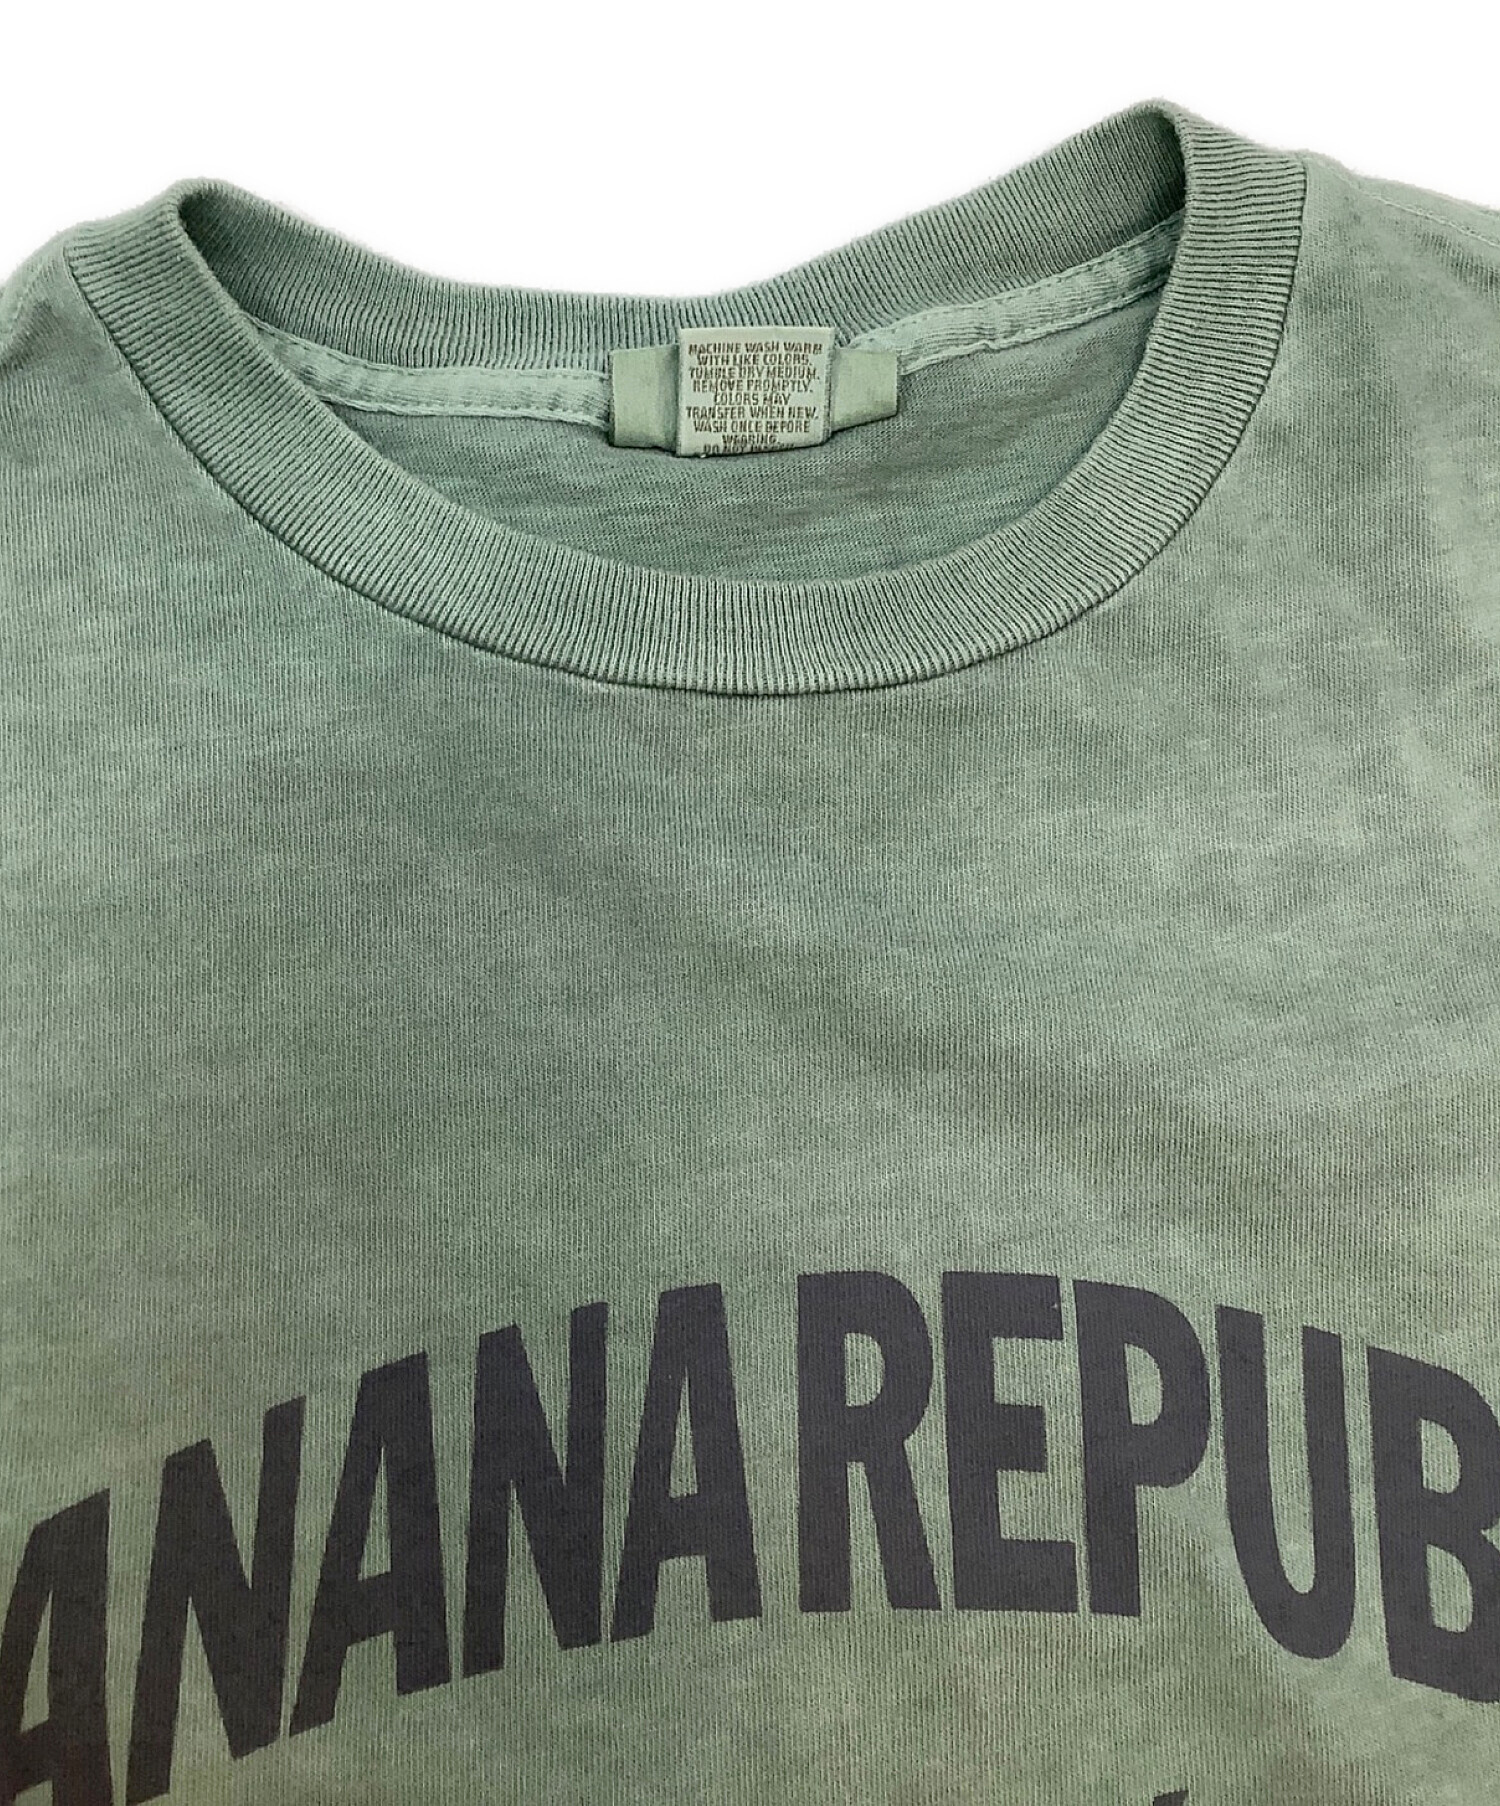 BANANA REPUBLIC (バナナリパブリック) ヴィンテージTシャツ サイズ:S